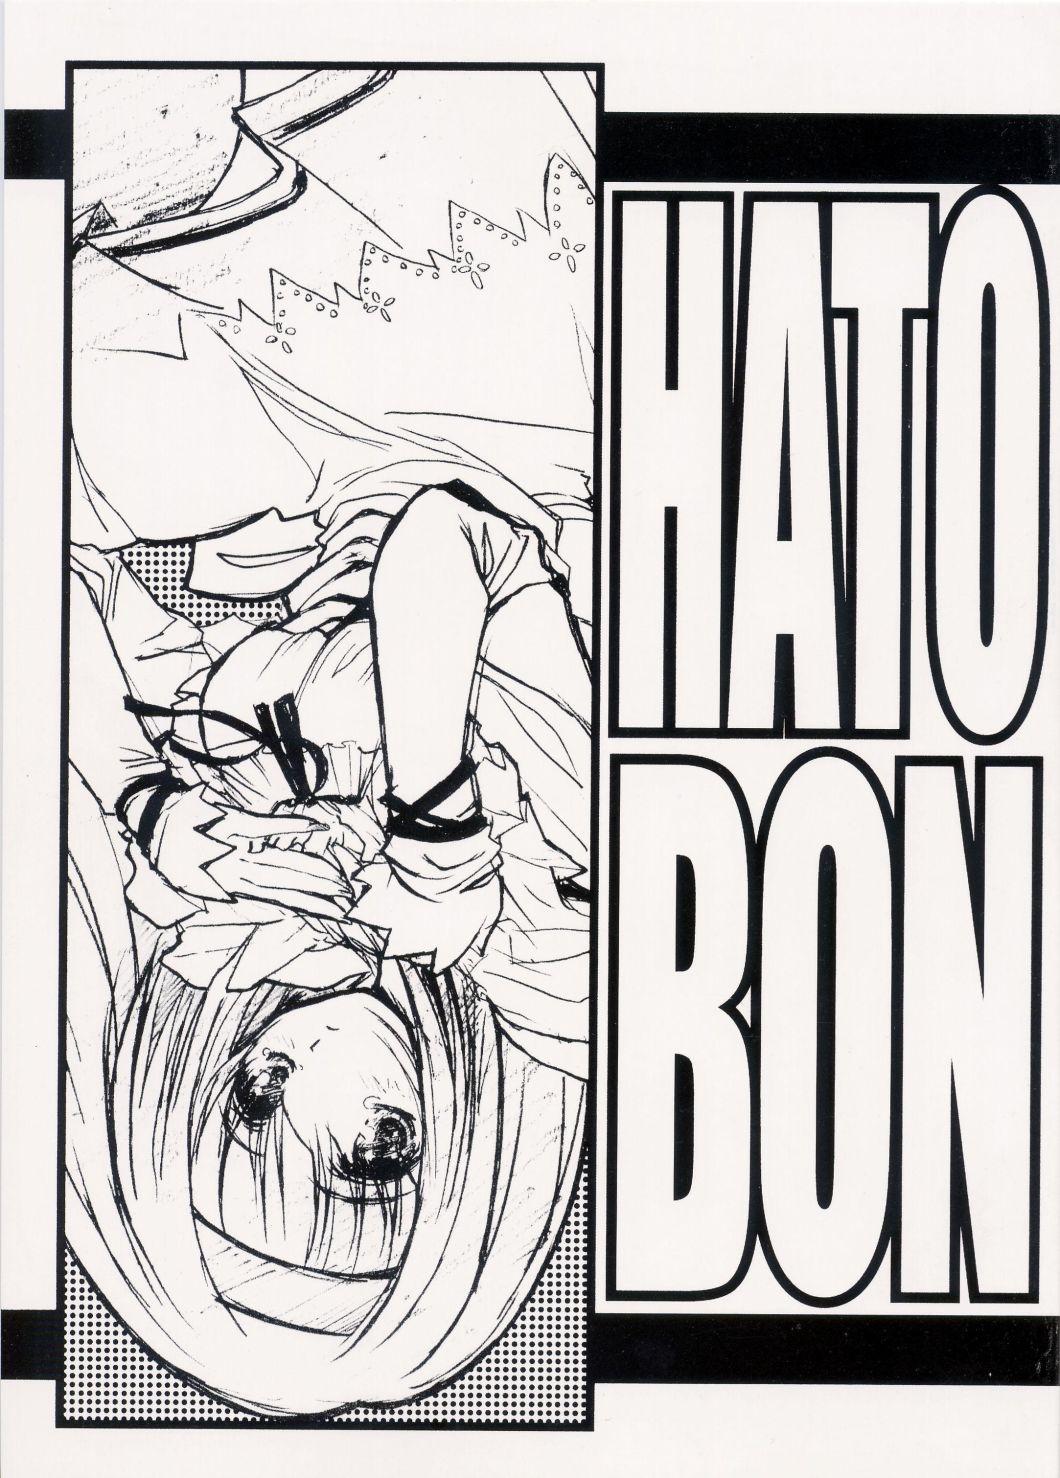 HATOBON 0